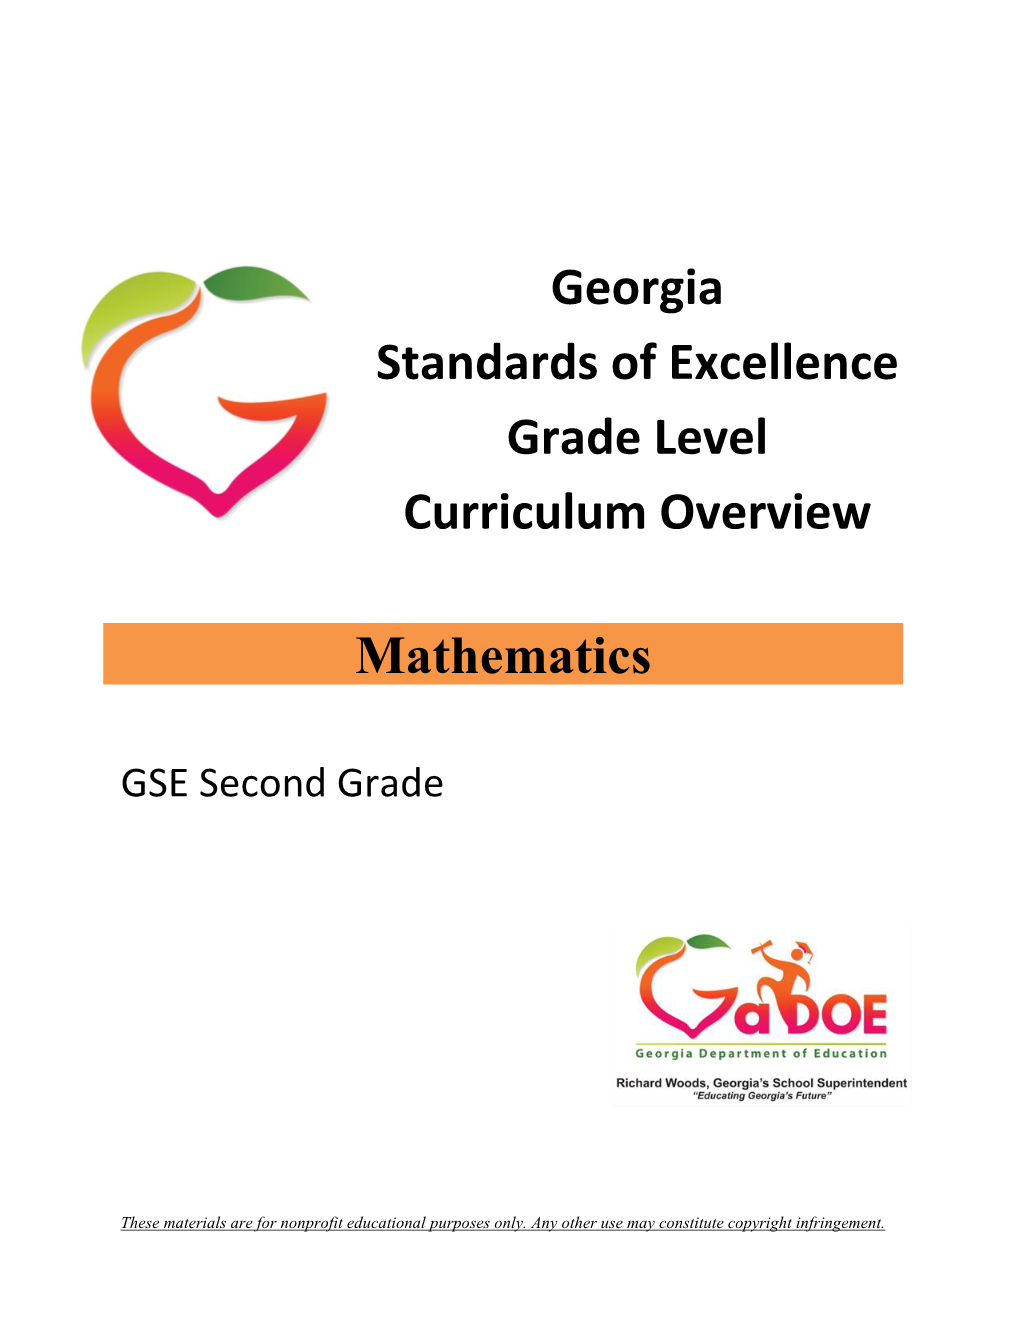 Second Grade-Grade Level Overview